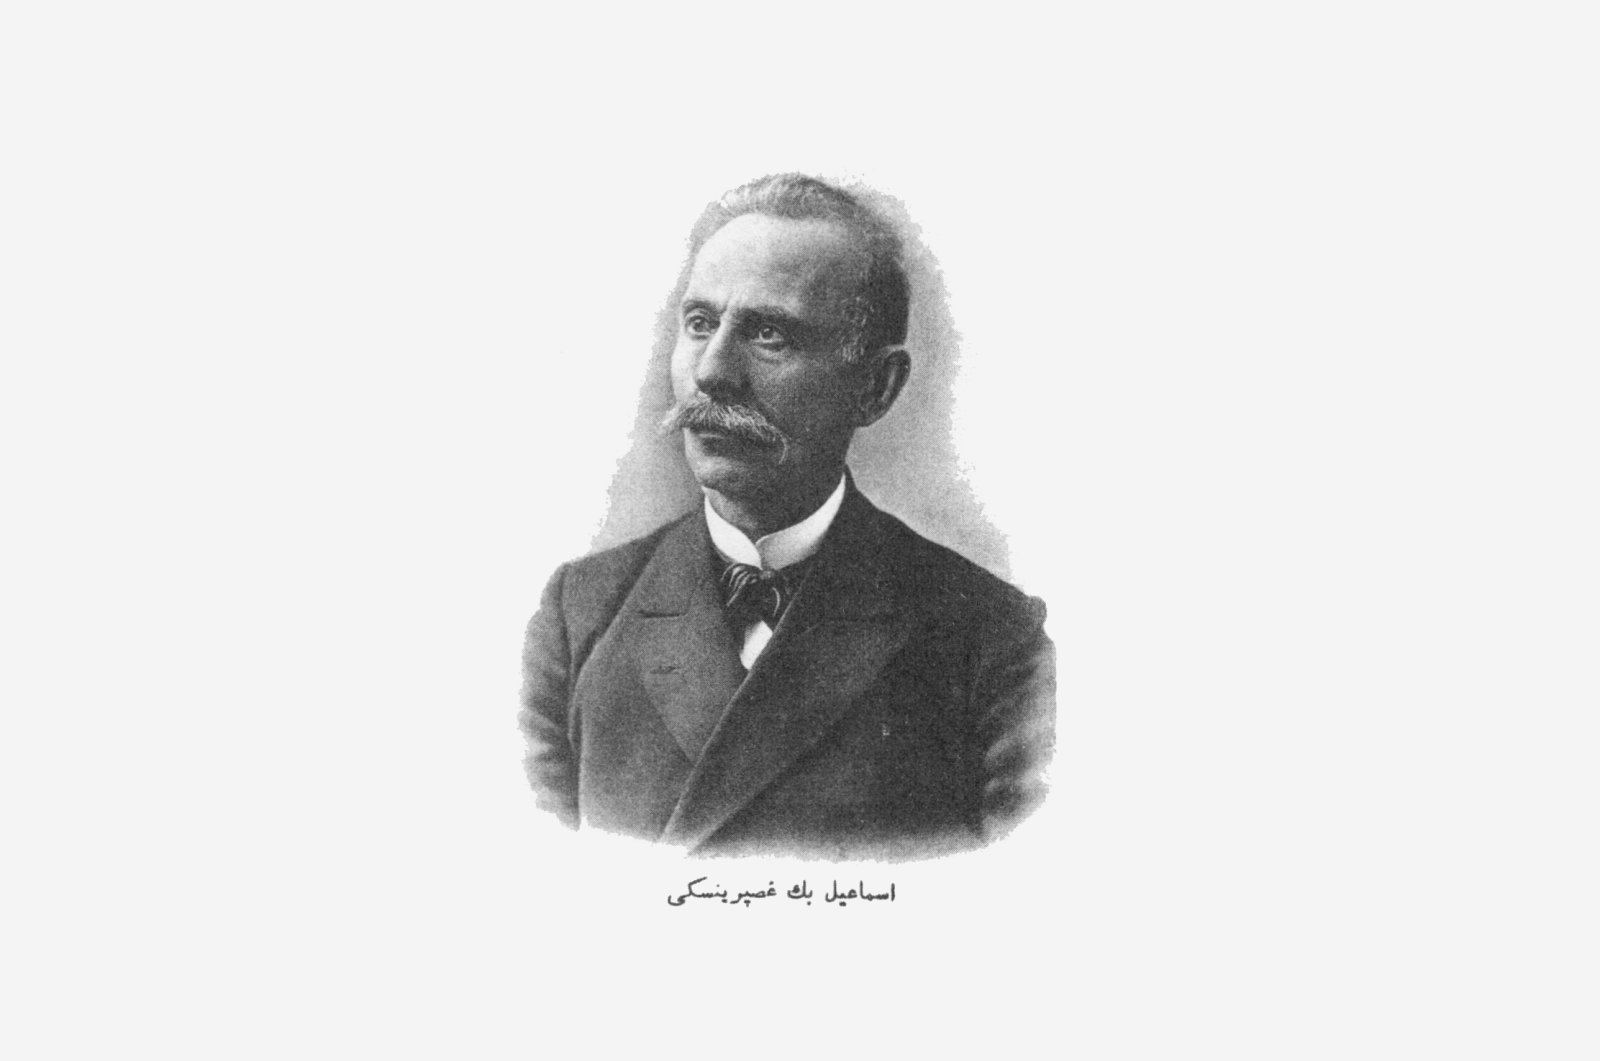 A portrait picture of Ismail Gaspıralı. 